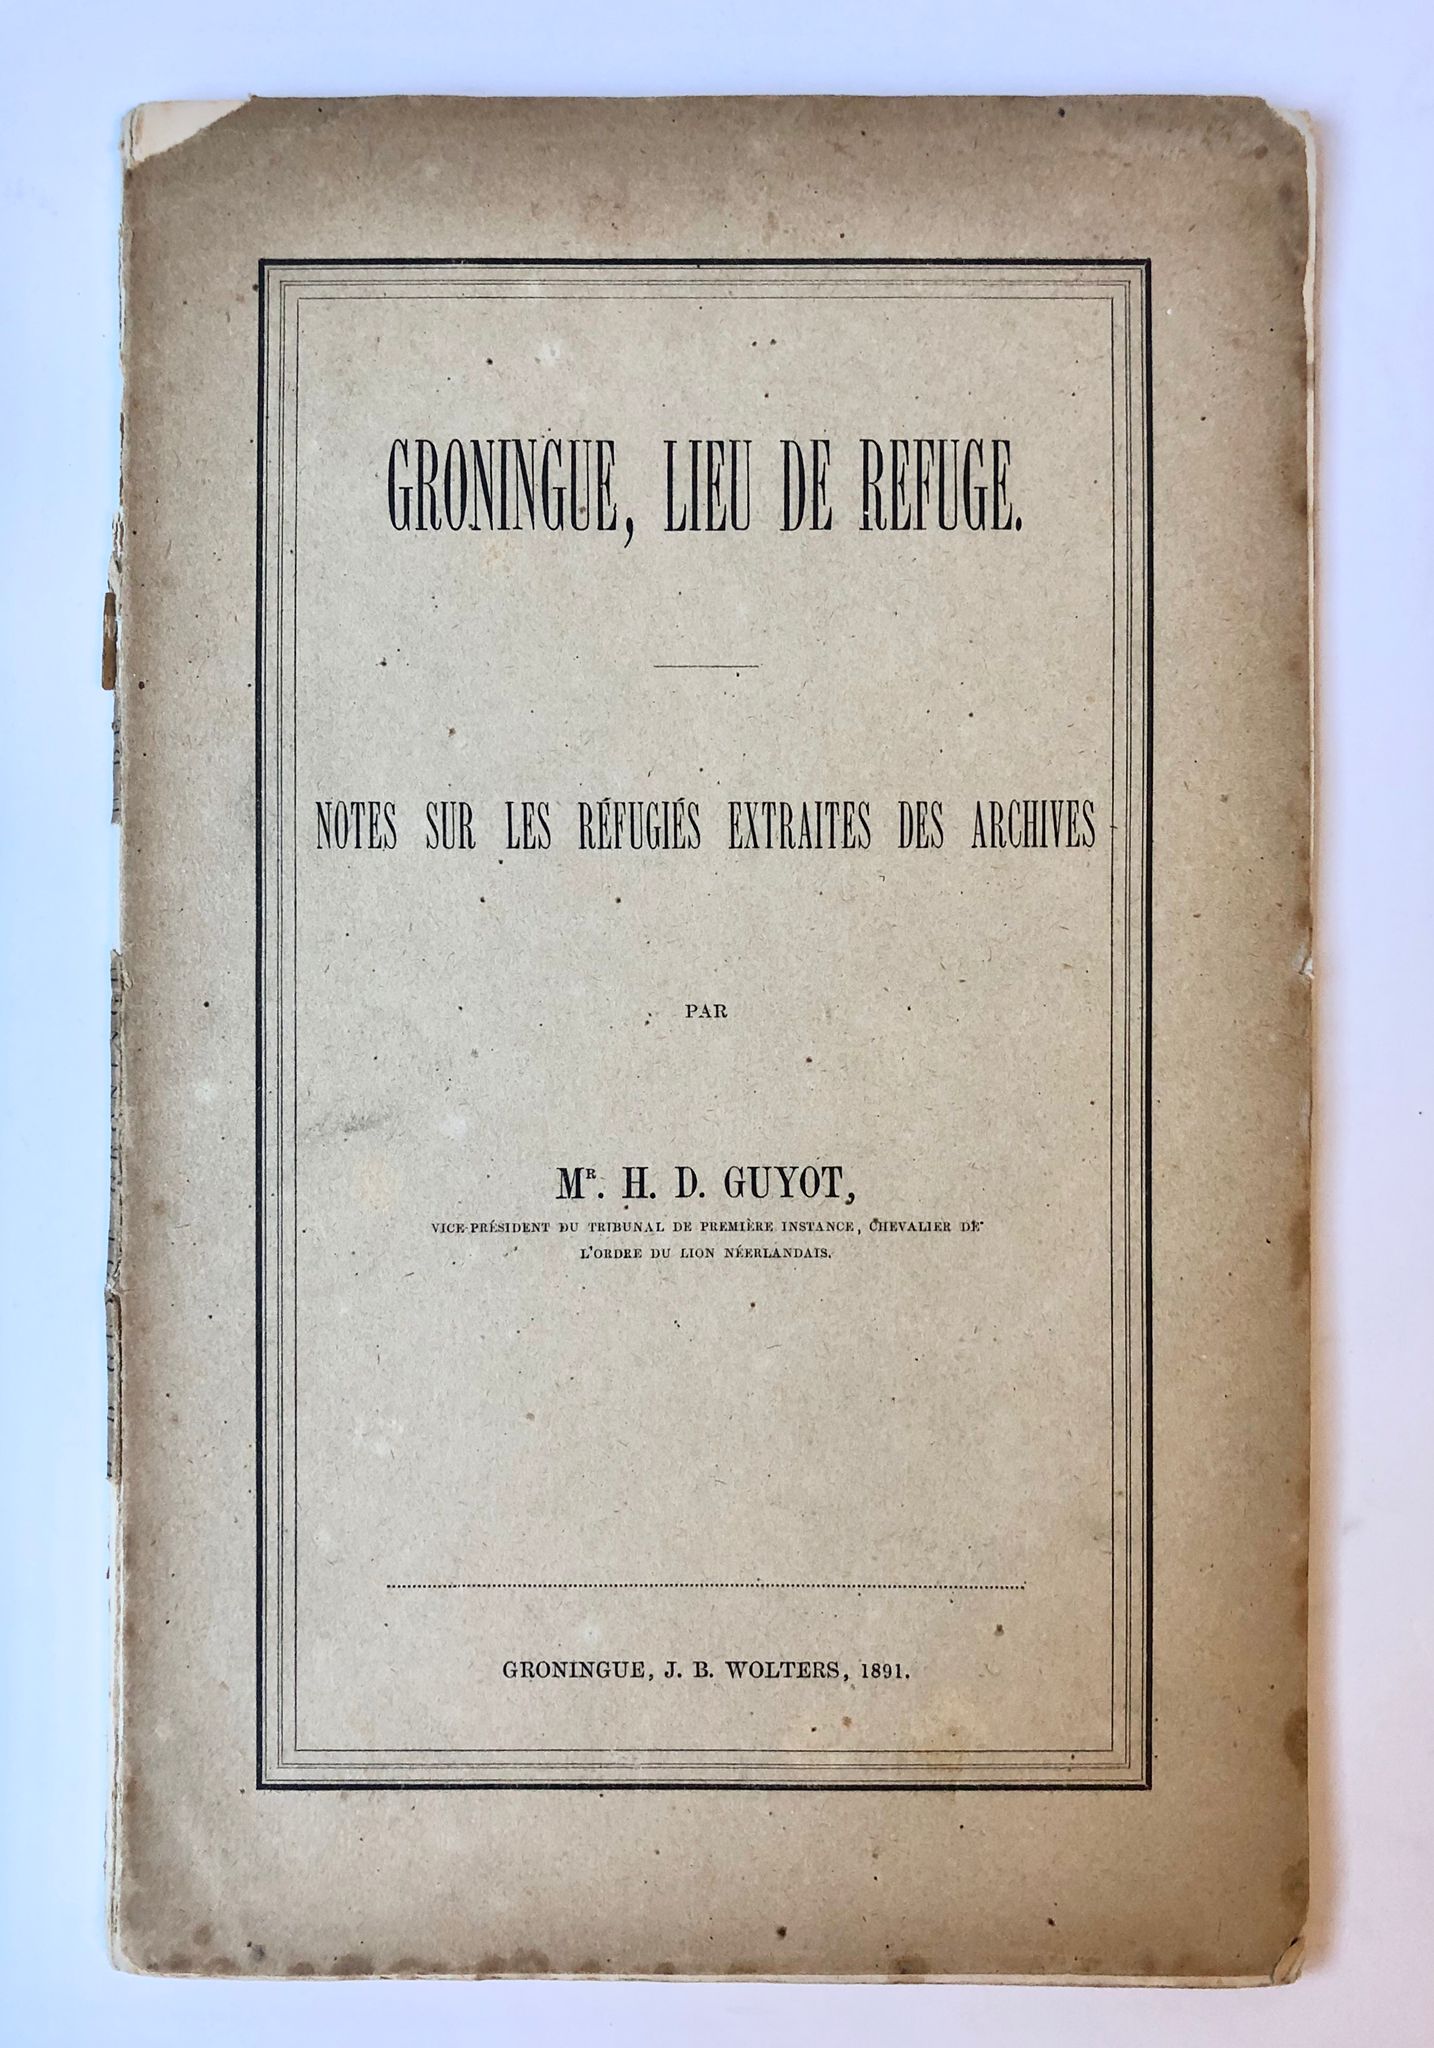 [Groningen] Groningue, Lieu de Refuge, notes sur les réfugiés extraites des archives, J. B. Wolters, Groningue, 1891, 48 pp.